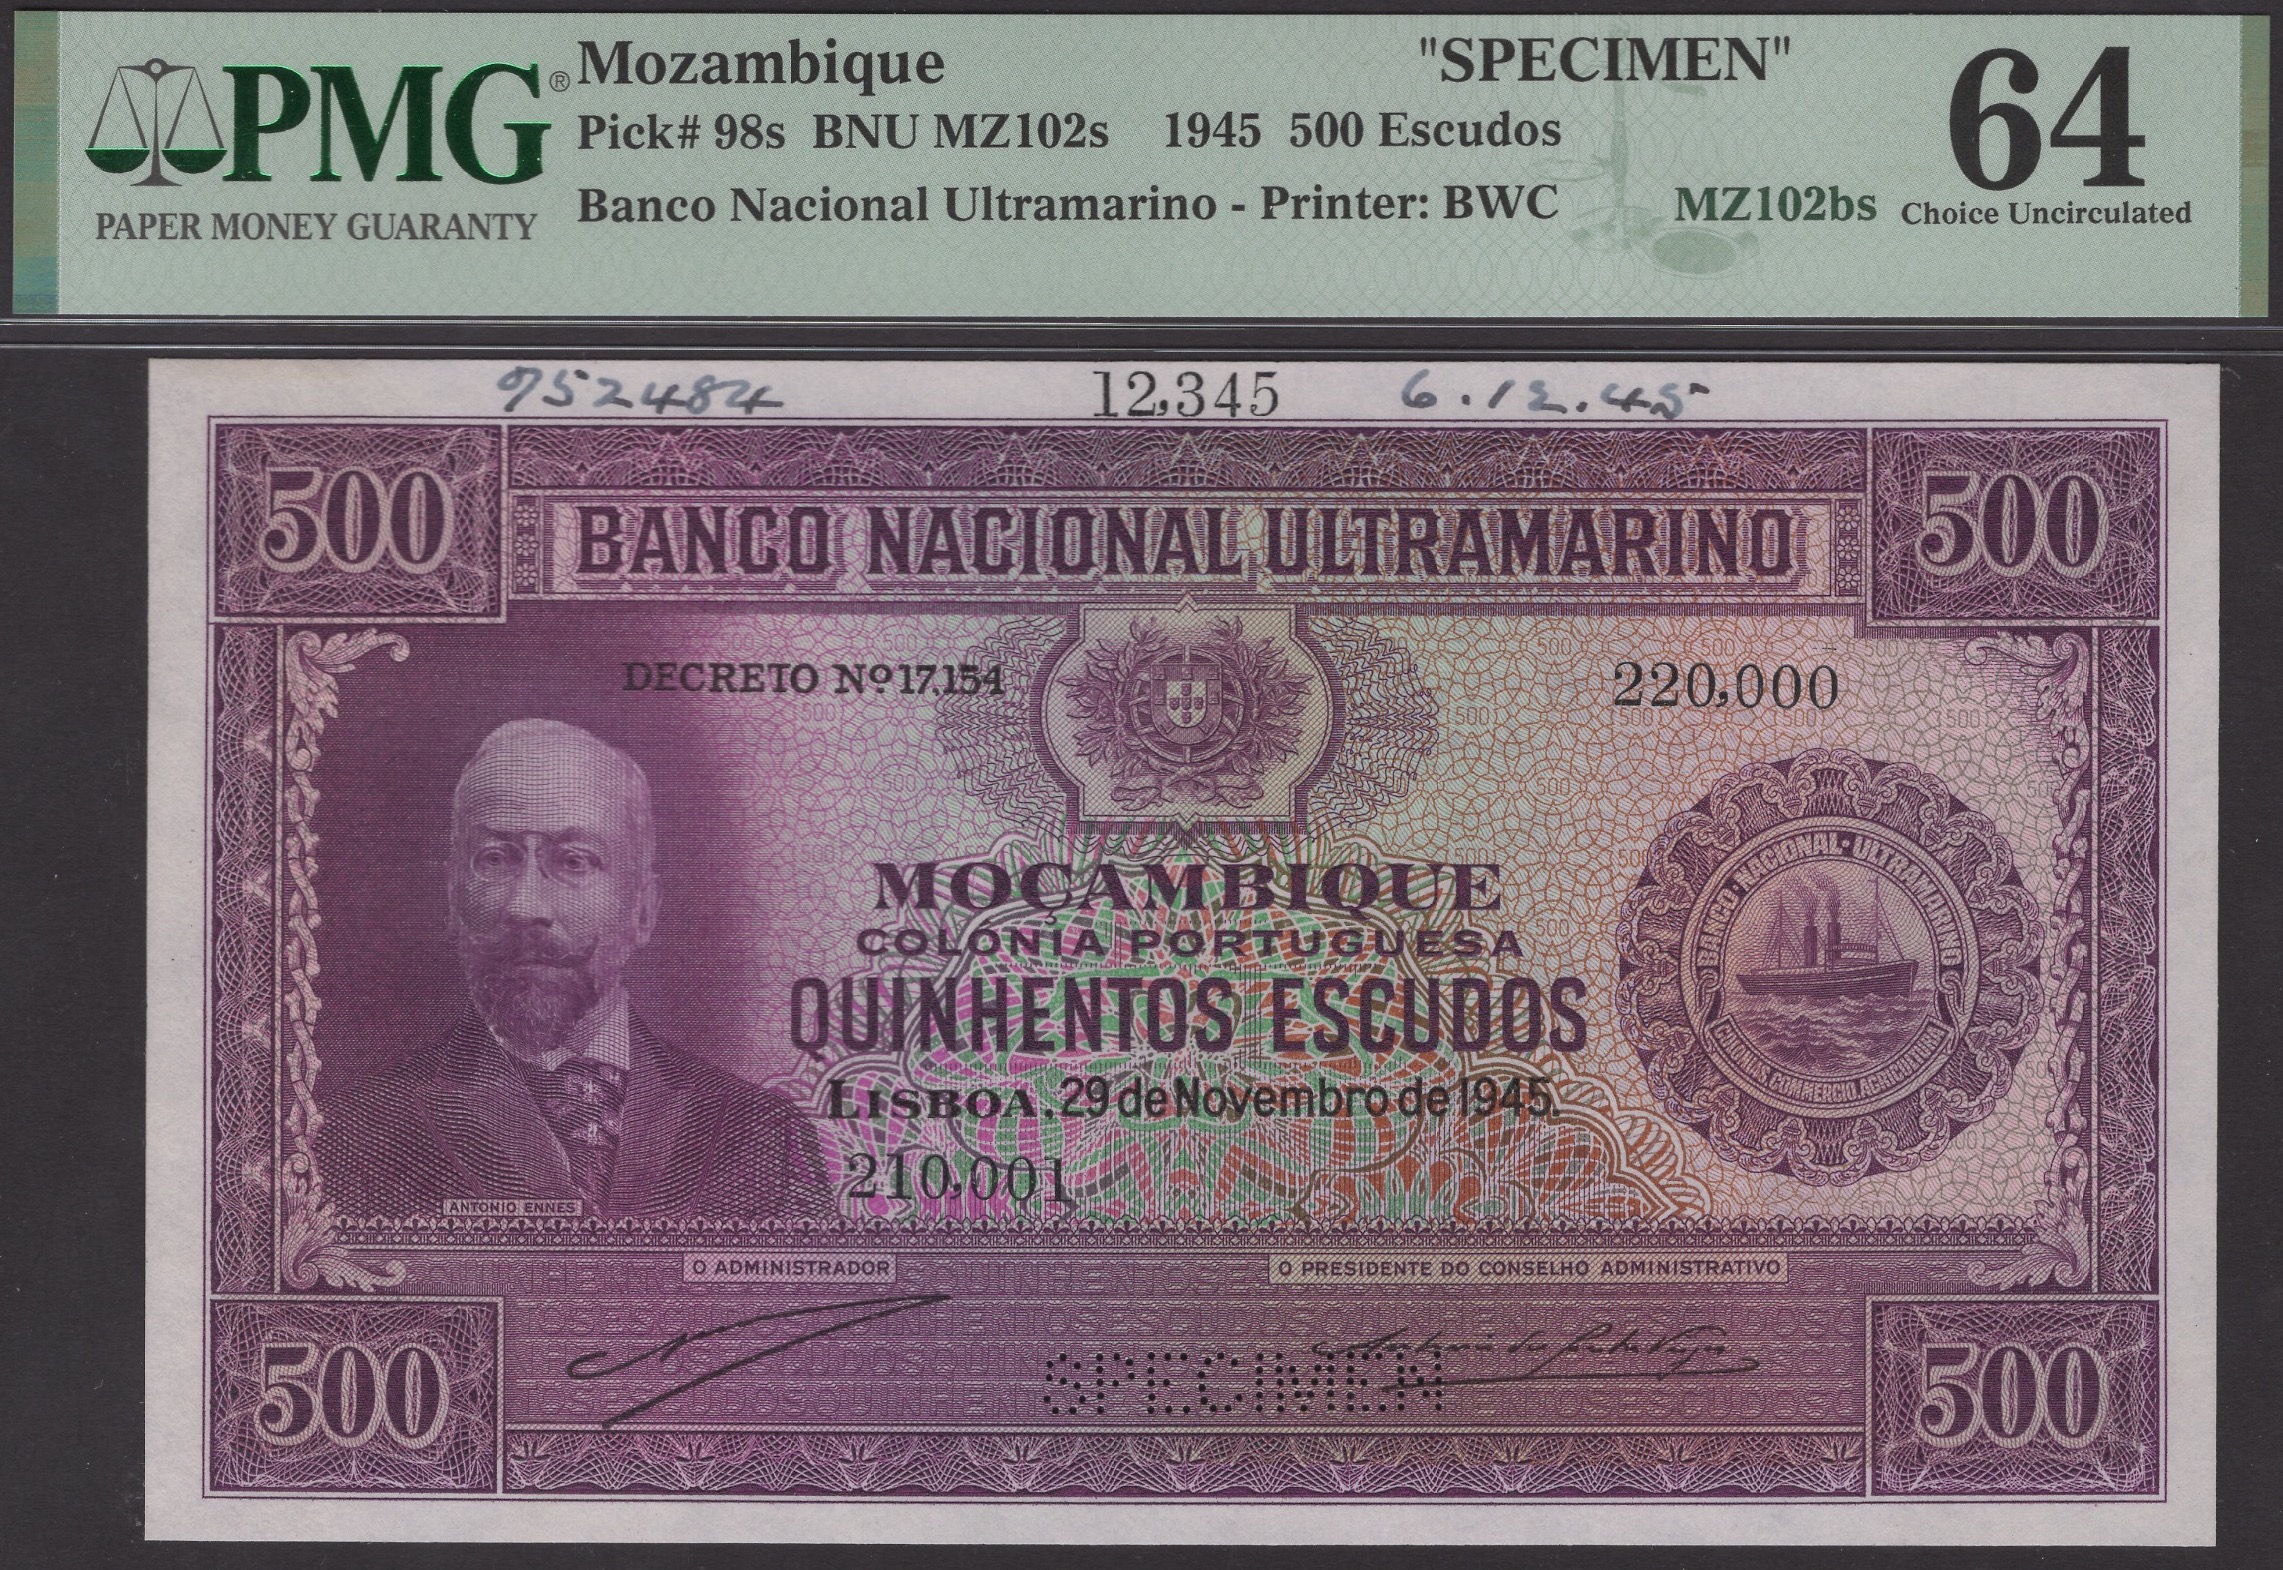 Banco Nacional Ultramarino, Mozambique, printers archival specimens for 500 Escudos (2), 29...